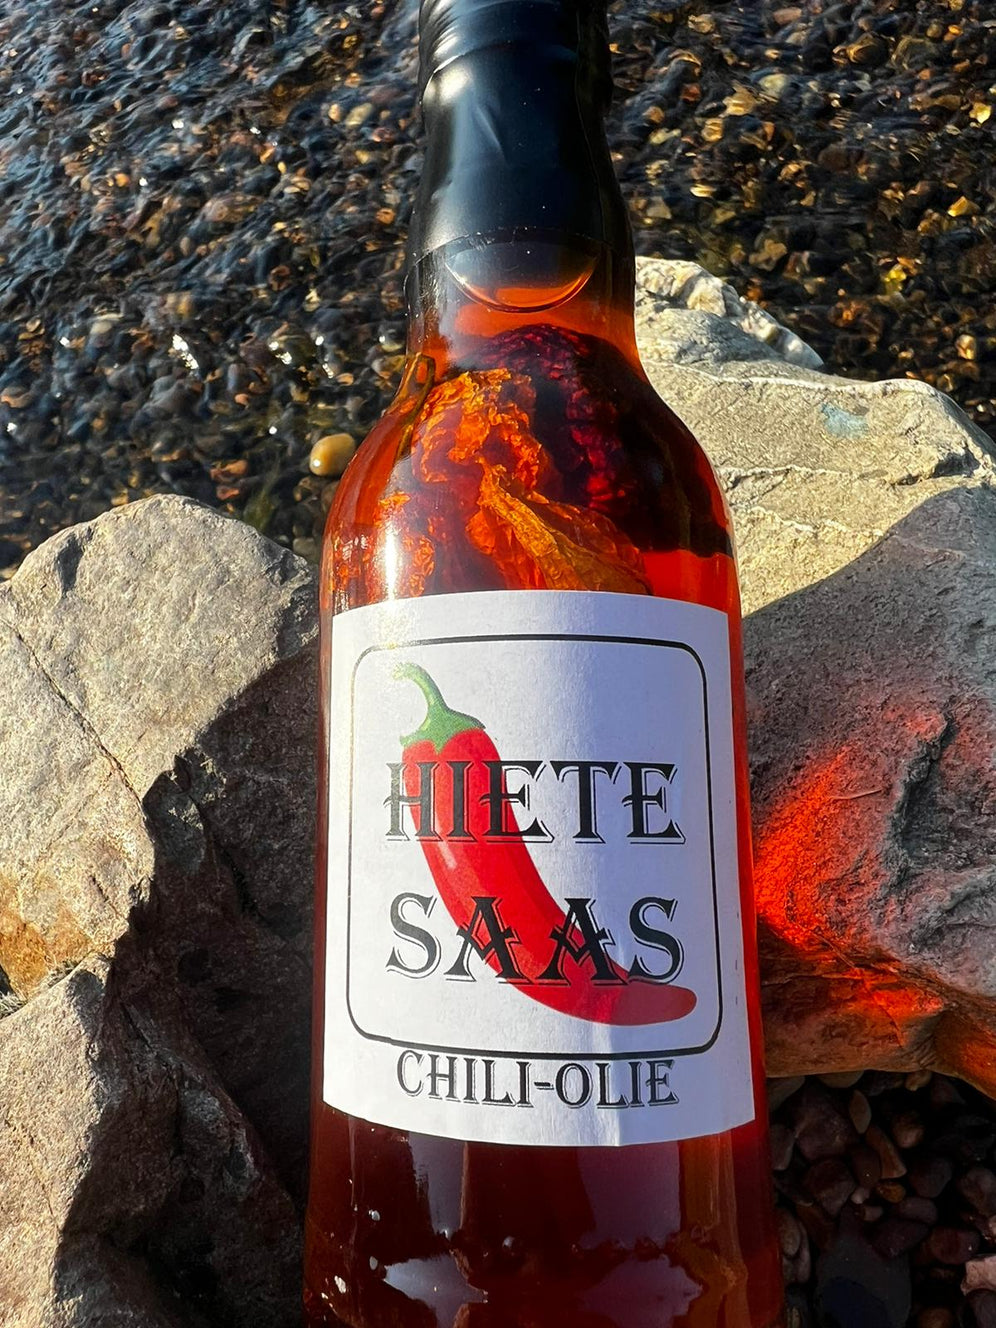 Bouteille de Chili-Olie sauce piquante avec piments bhut jolokai et carolina reaper, idéale pour plats froids et chauds.